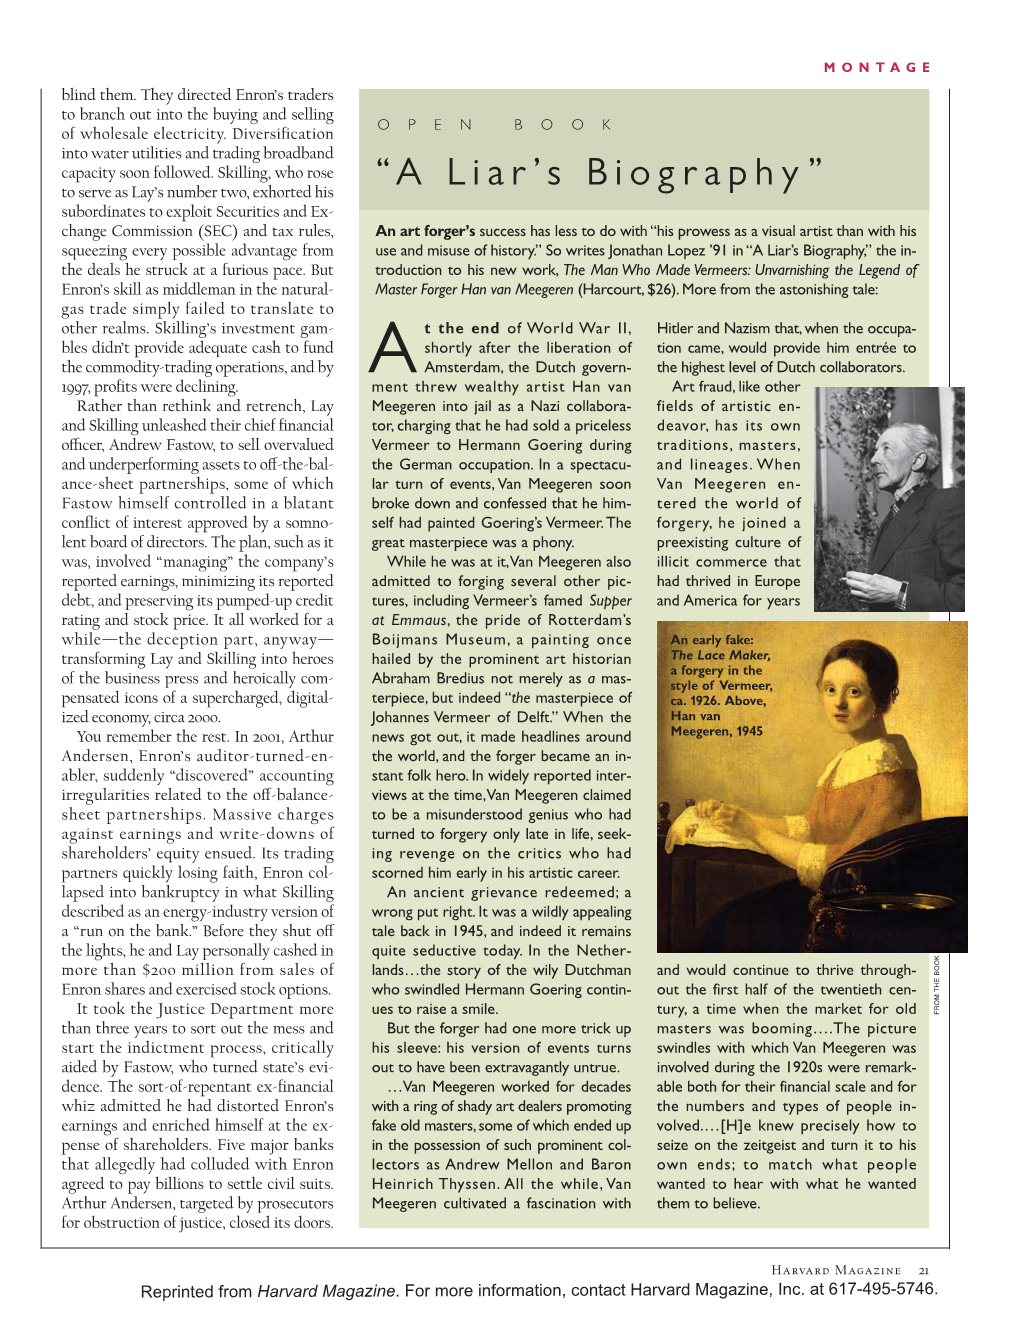 “A Liar's Biography”